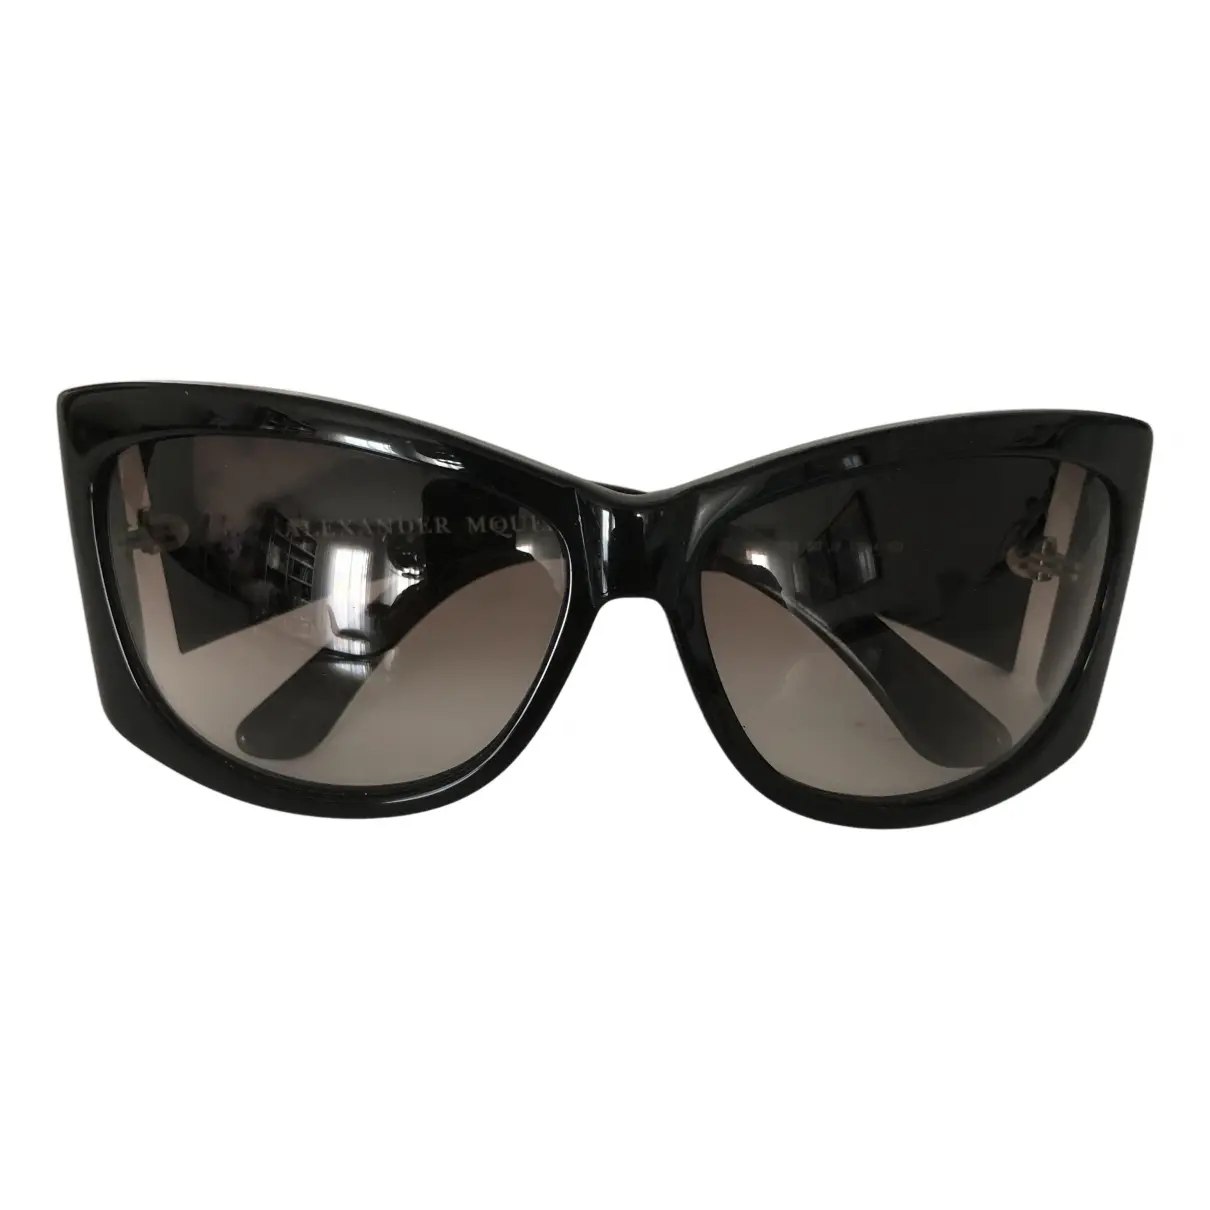 Oversized sunglasses Alexander McQueen - Vintage